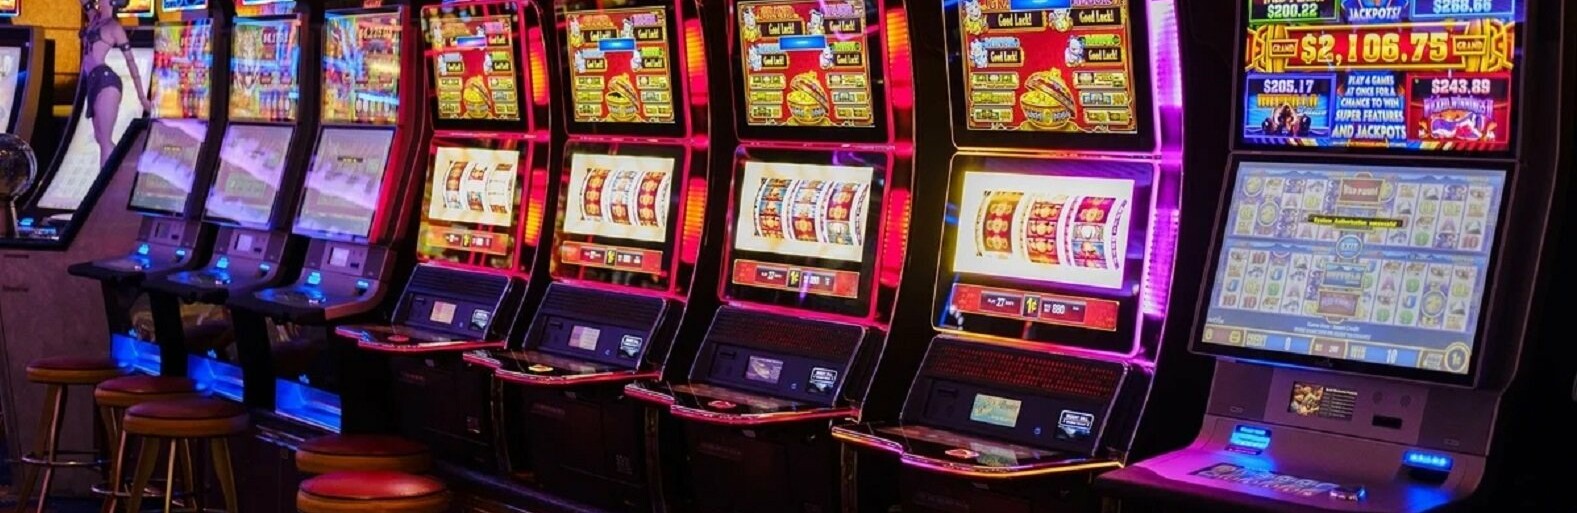 Игровые автоматы куплю в алматы казино гигант холл